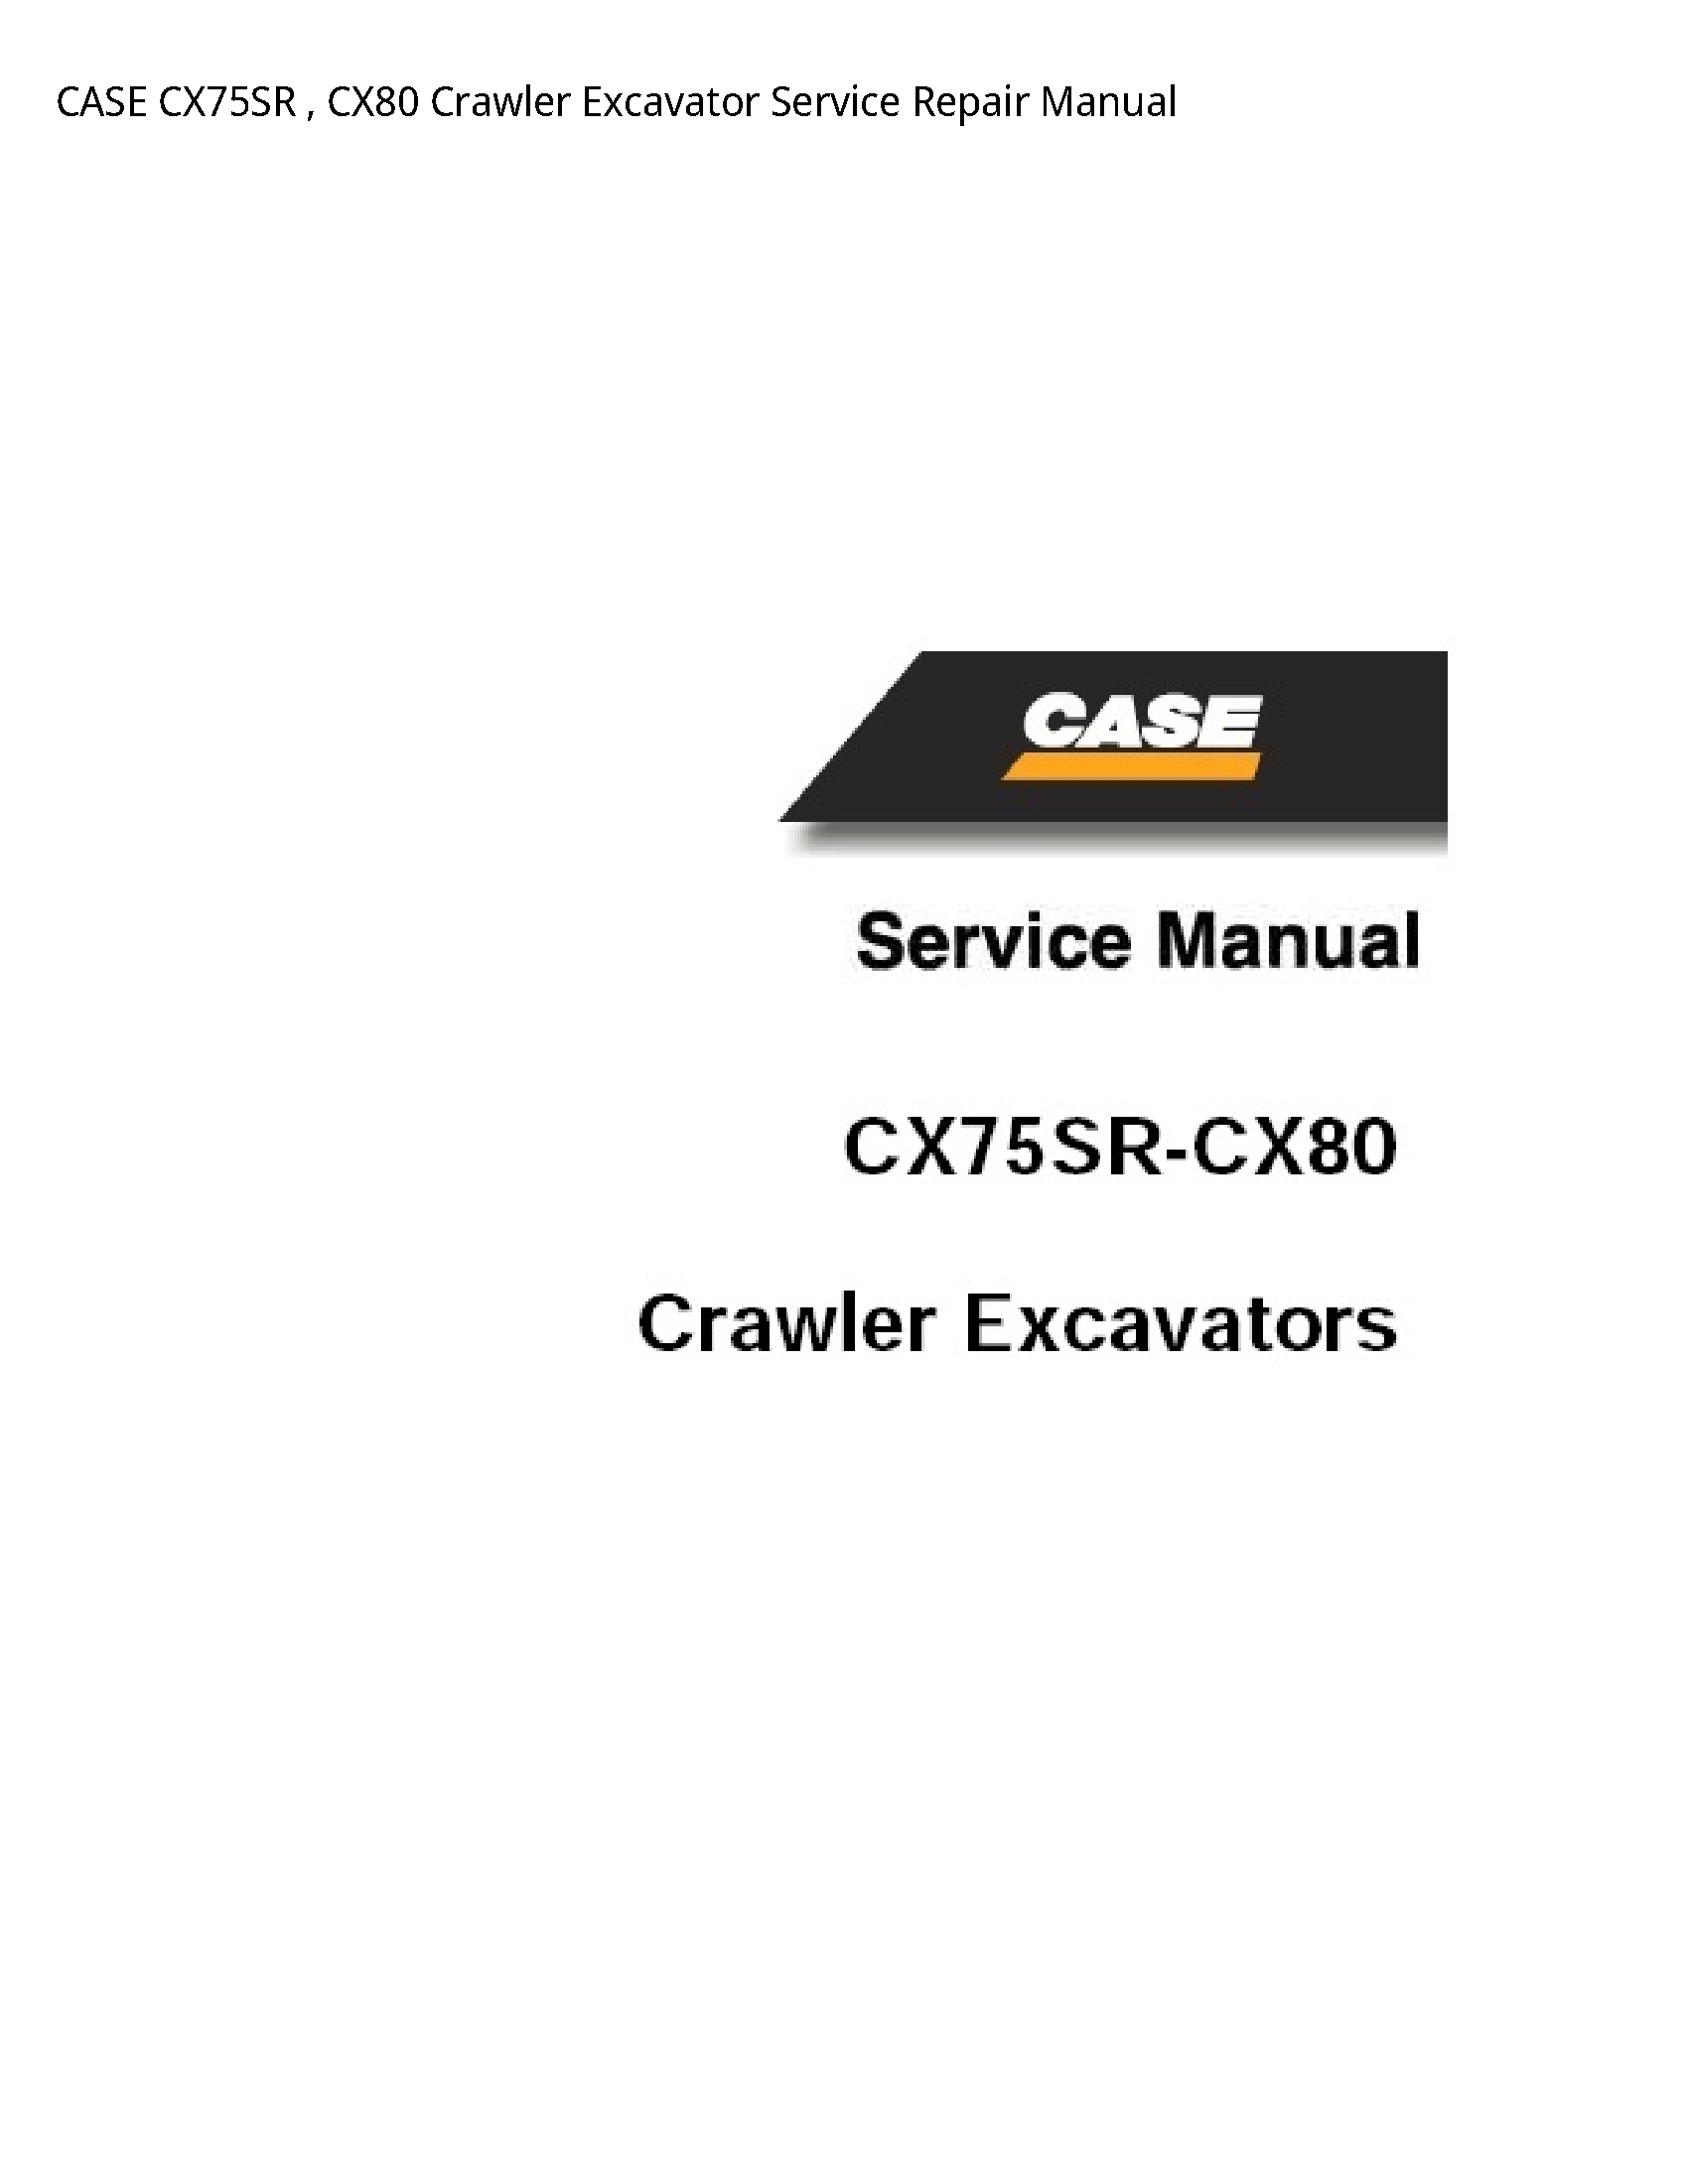 Case/Case IH CX75SR Crawler Excavator manual